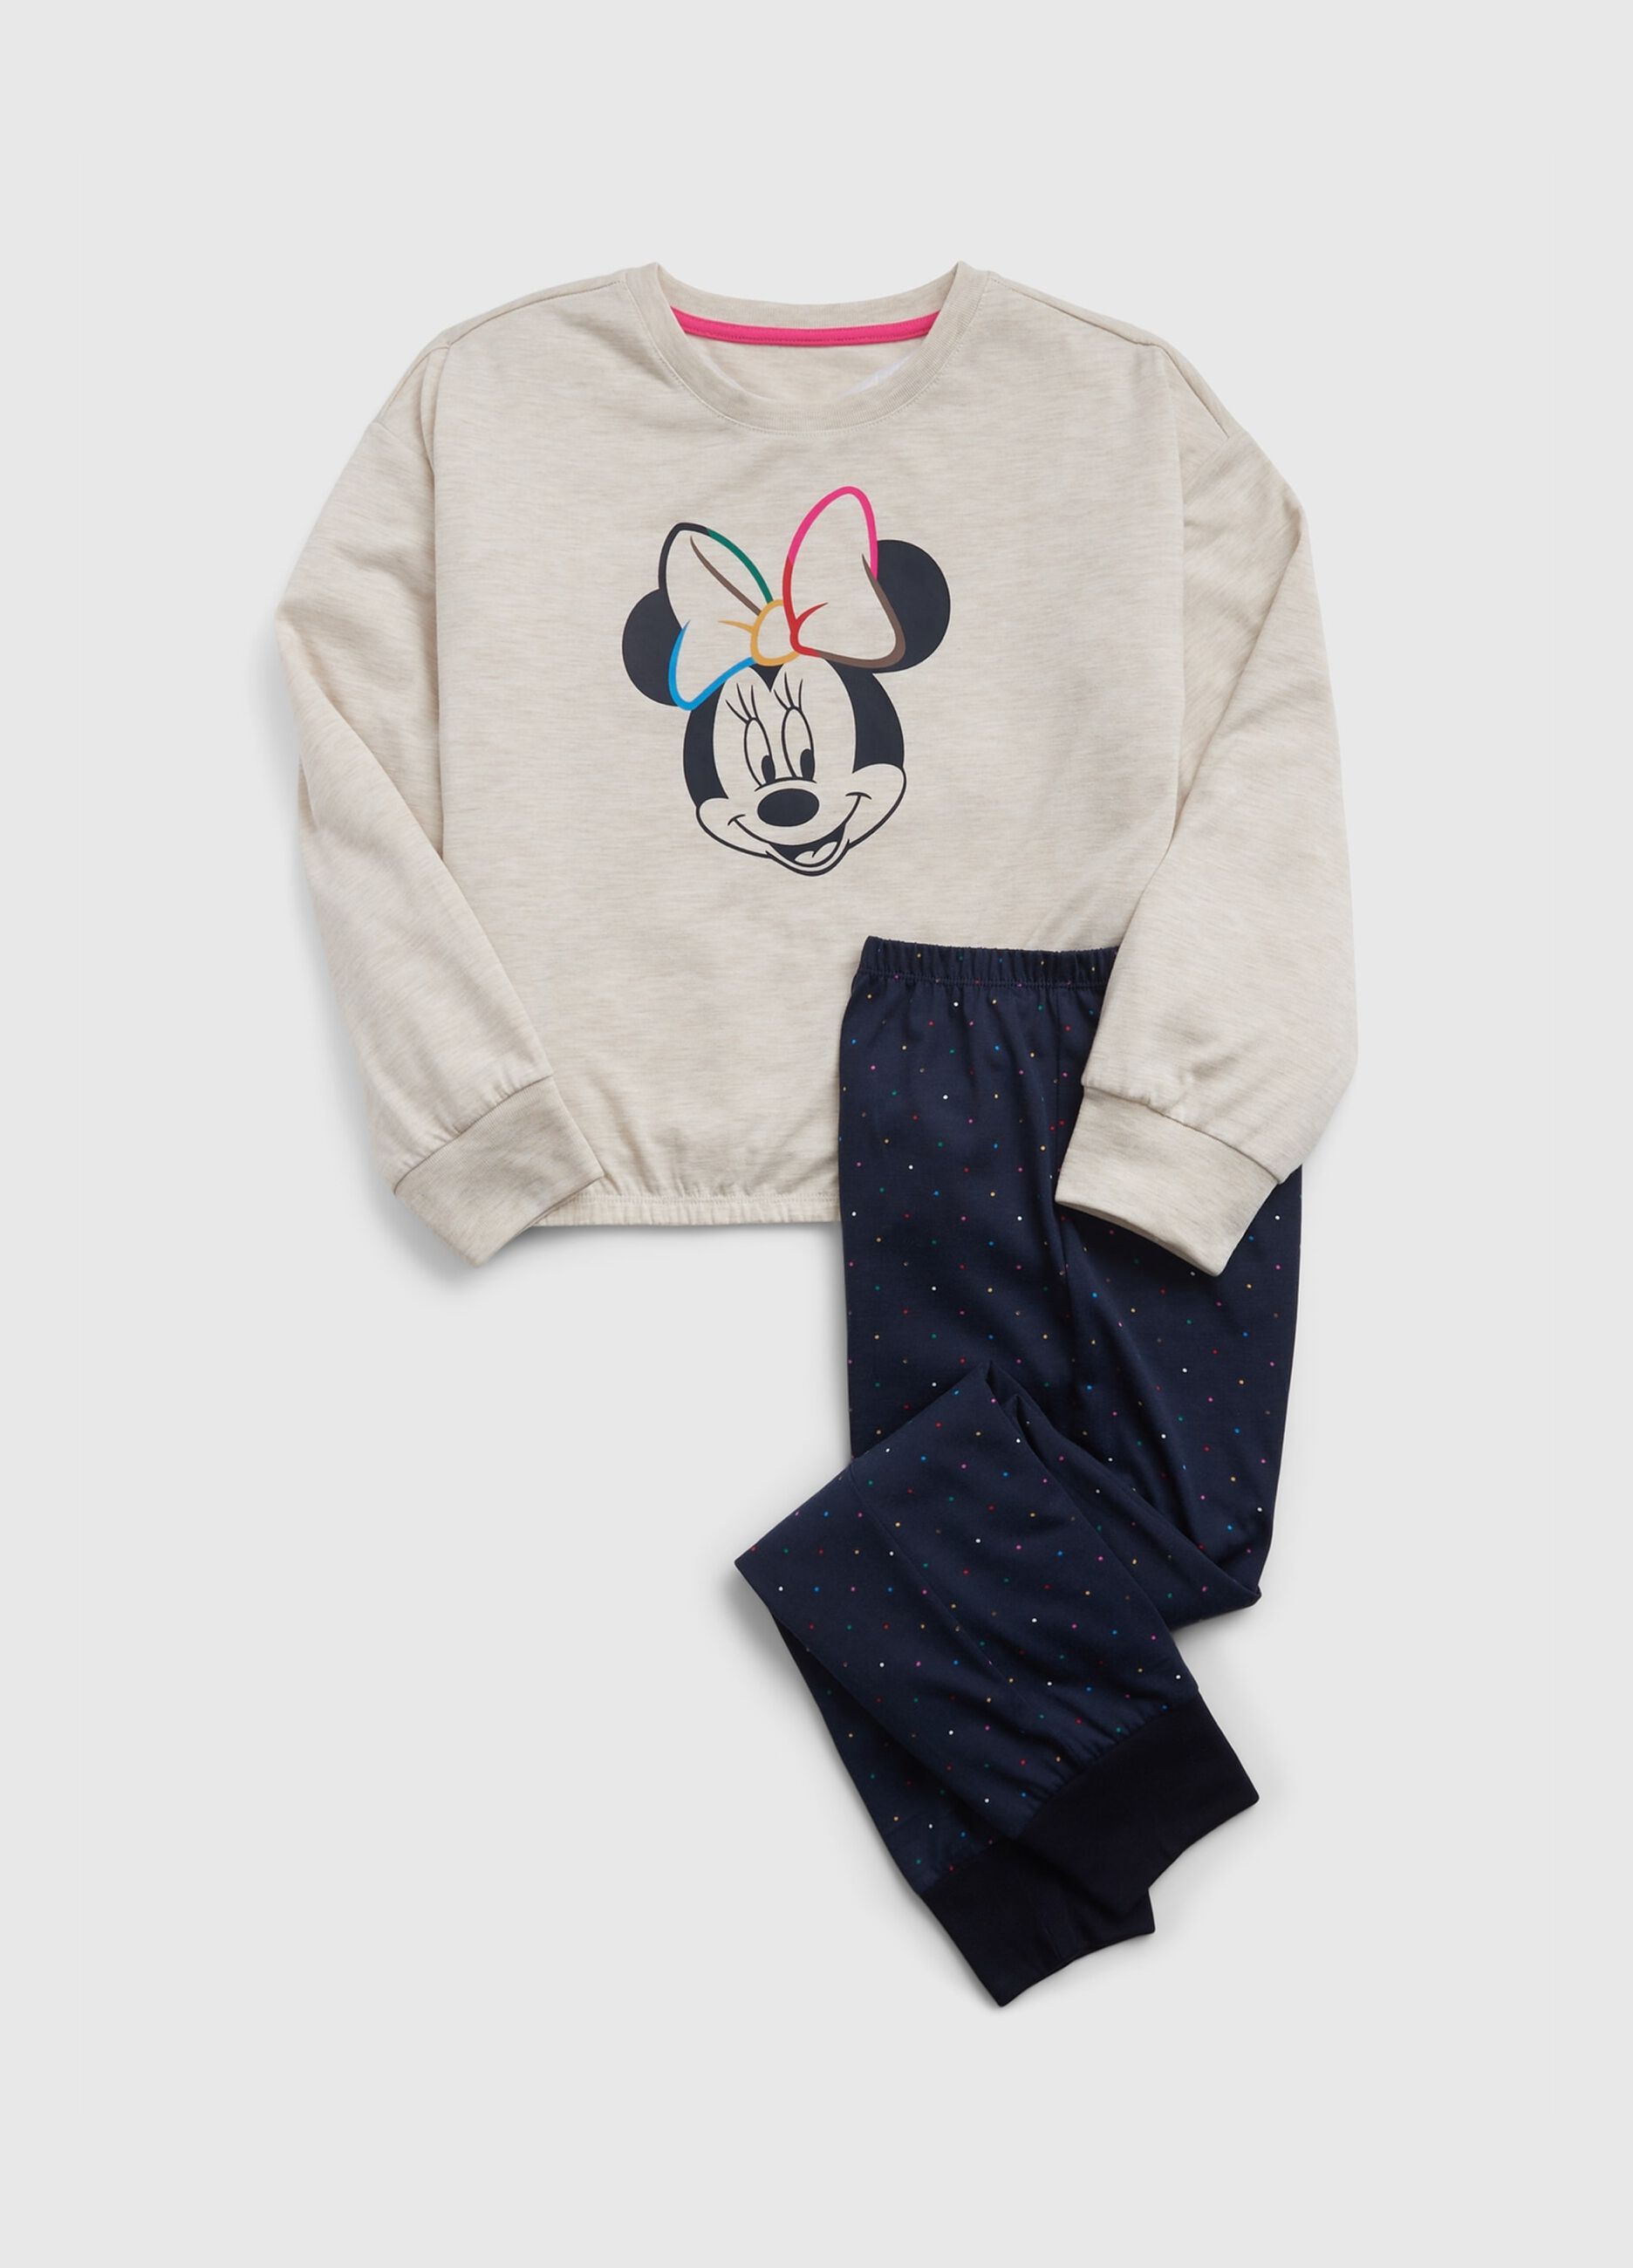 Long pyjamas with Disney Minnie Mouse print